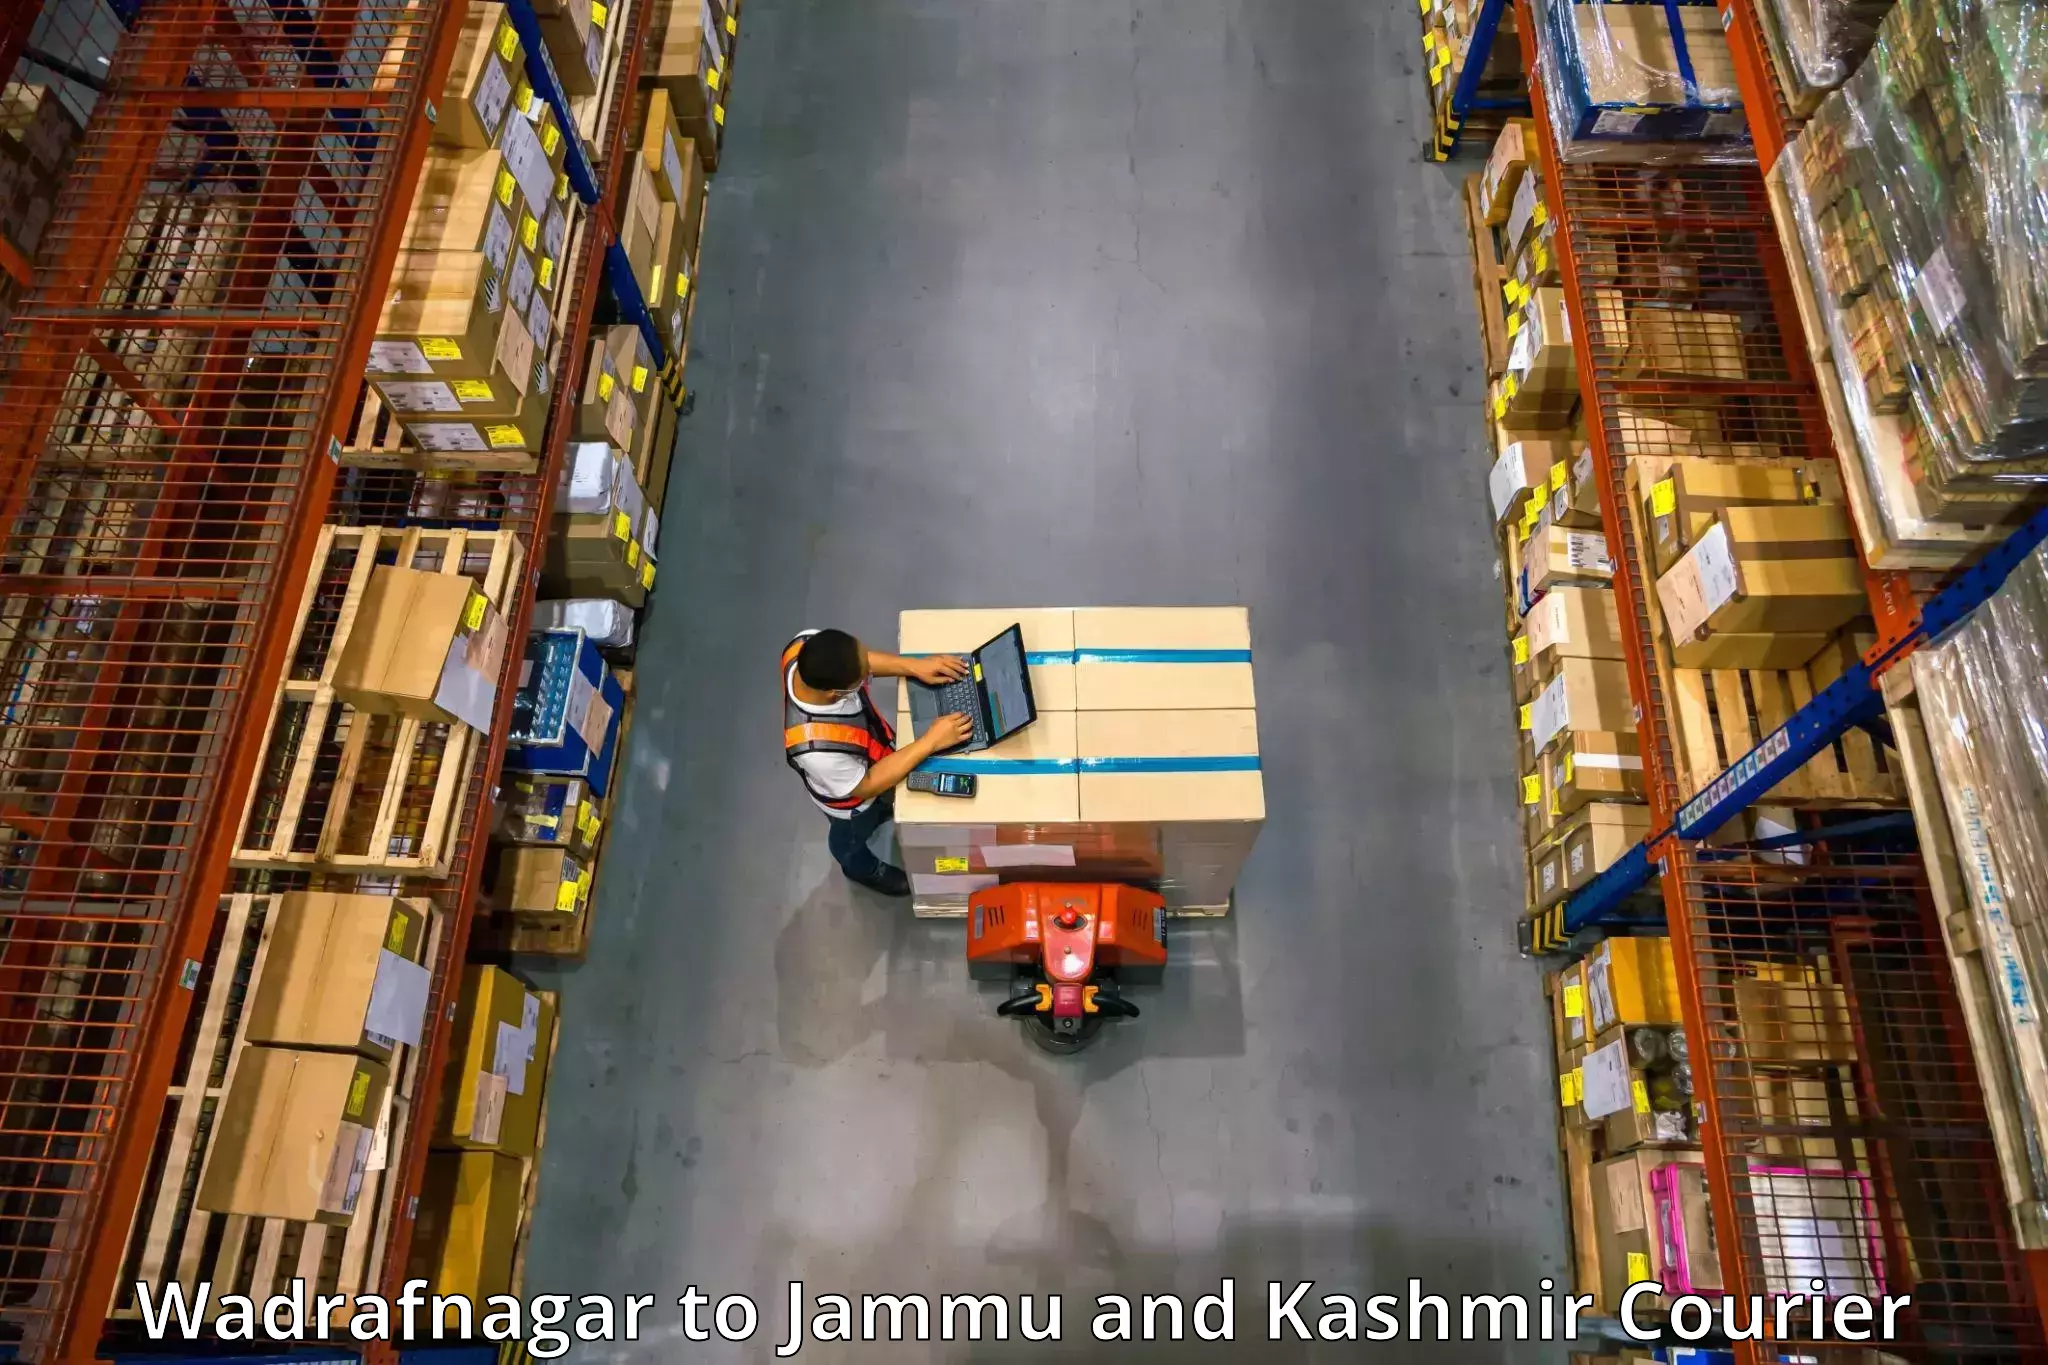 Full-service movers Wadrafnagar to Srinagar Kashmir